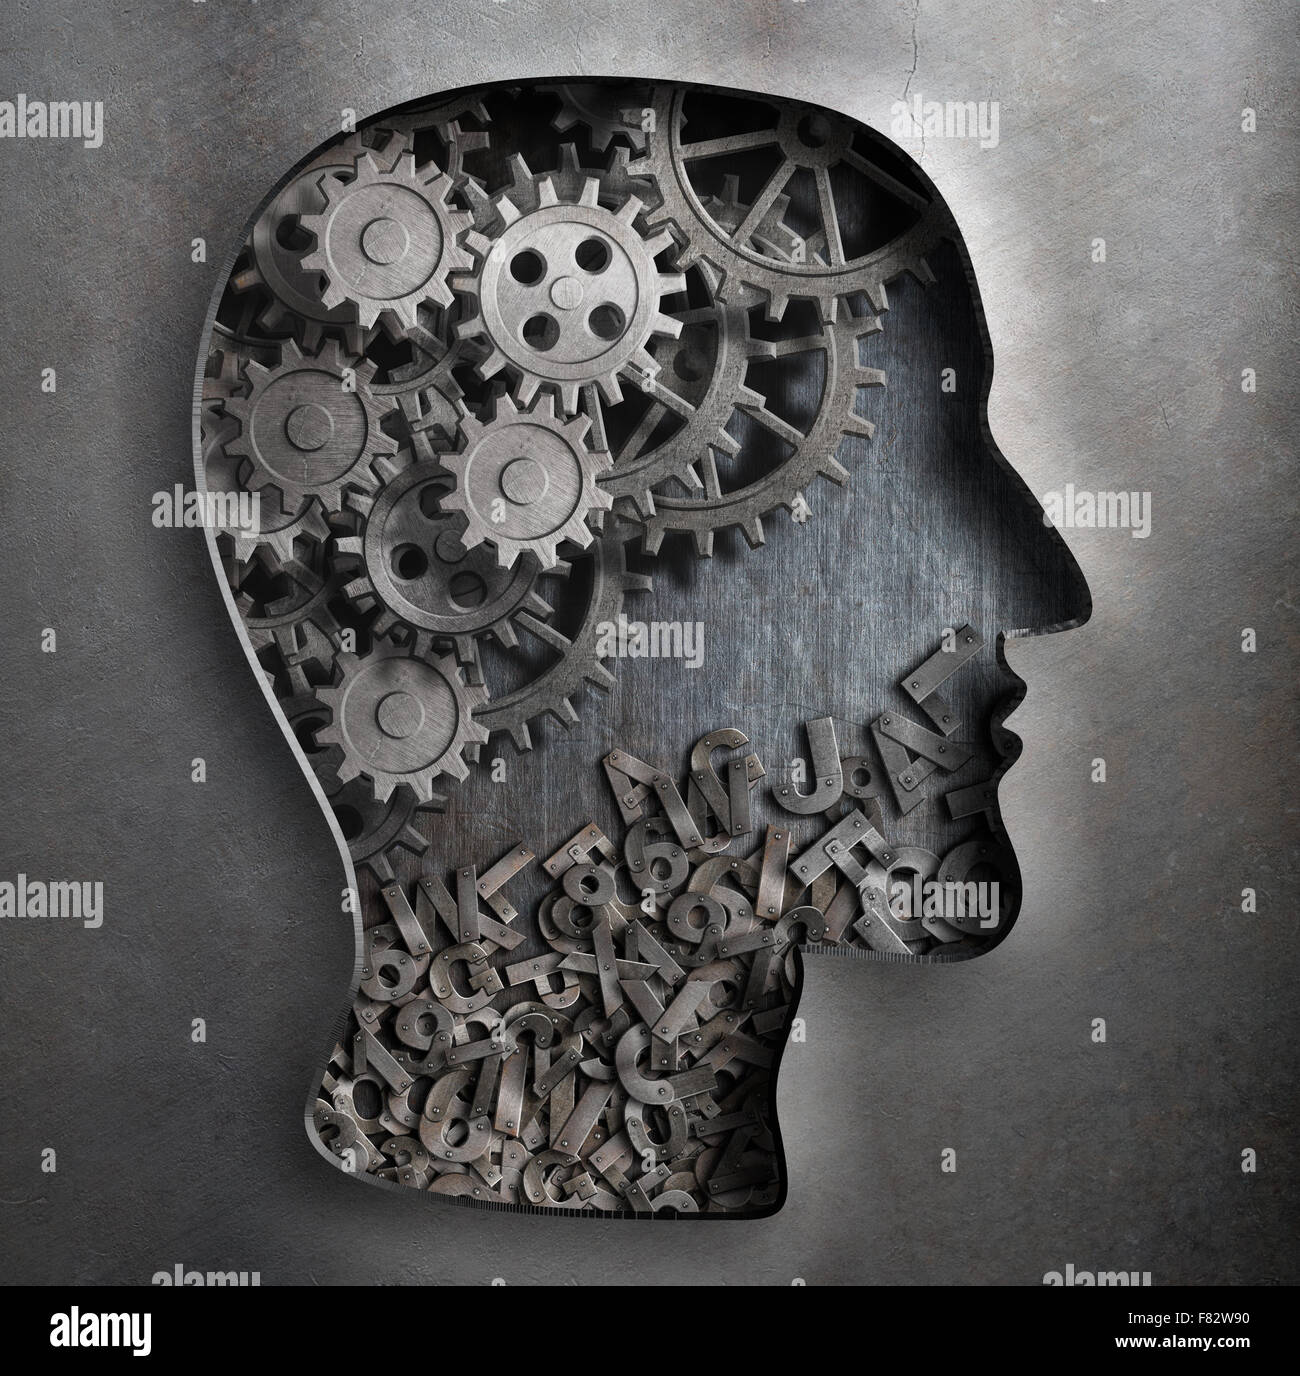 Gehirn Arbeitsmodell. Denken, Psychologie, Kreativität, Sprache-Konzept. Stockfoto